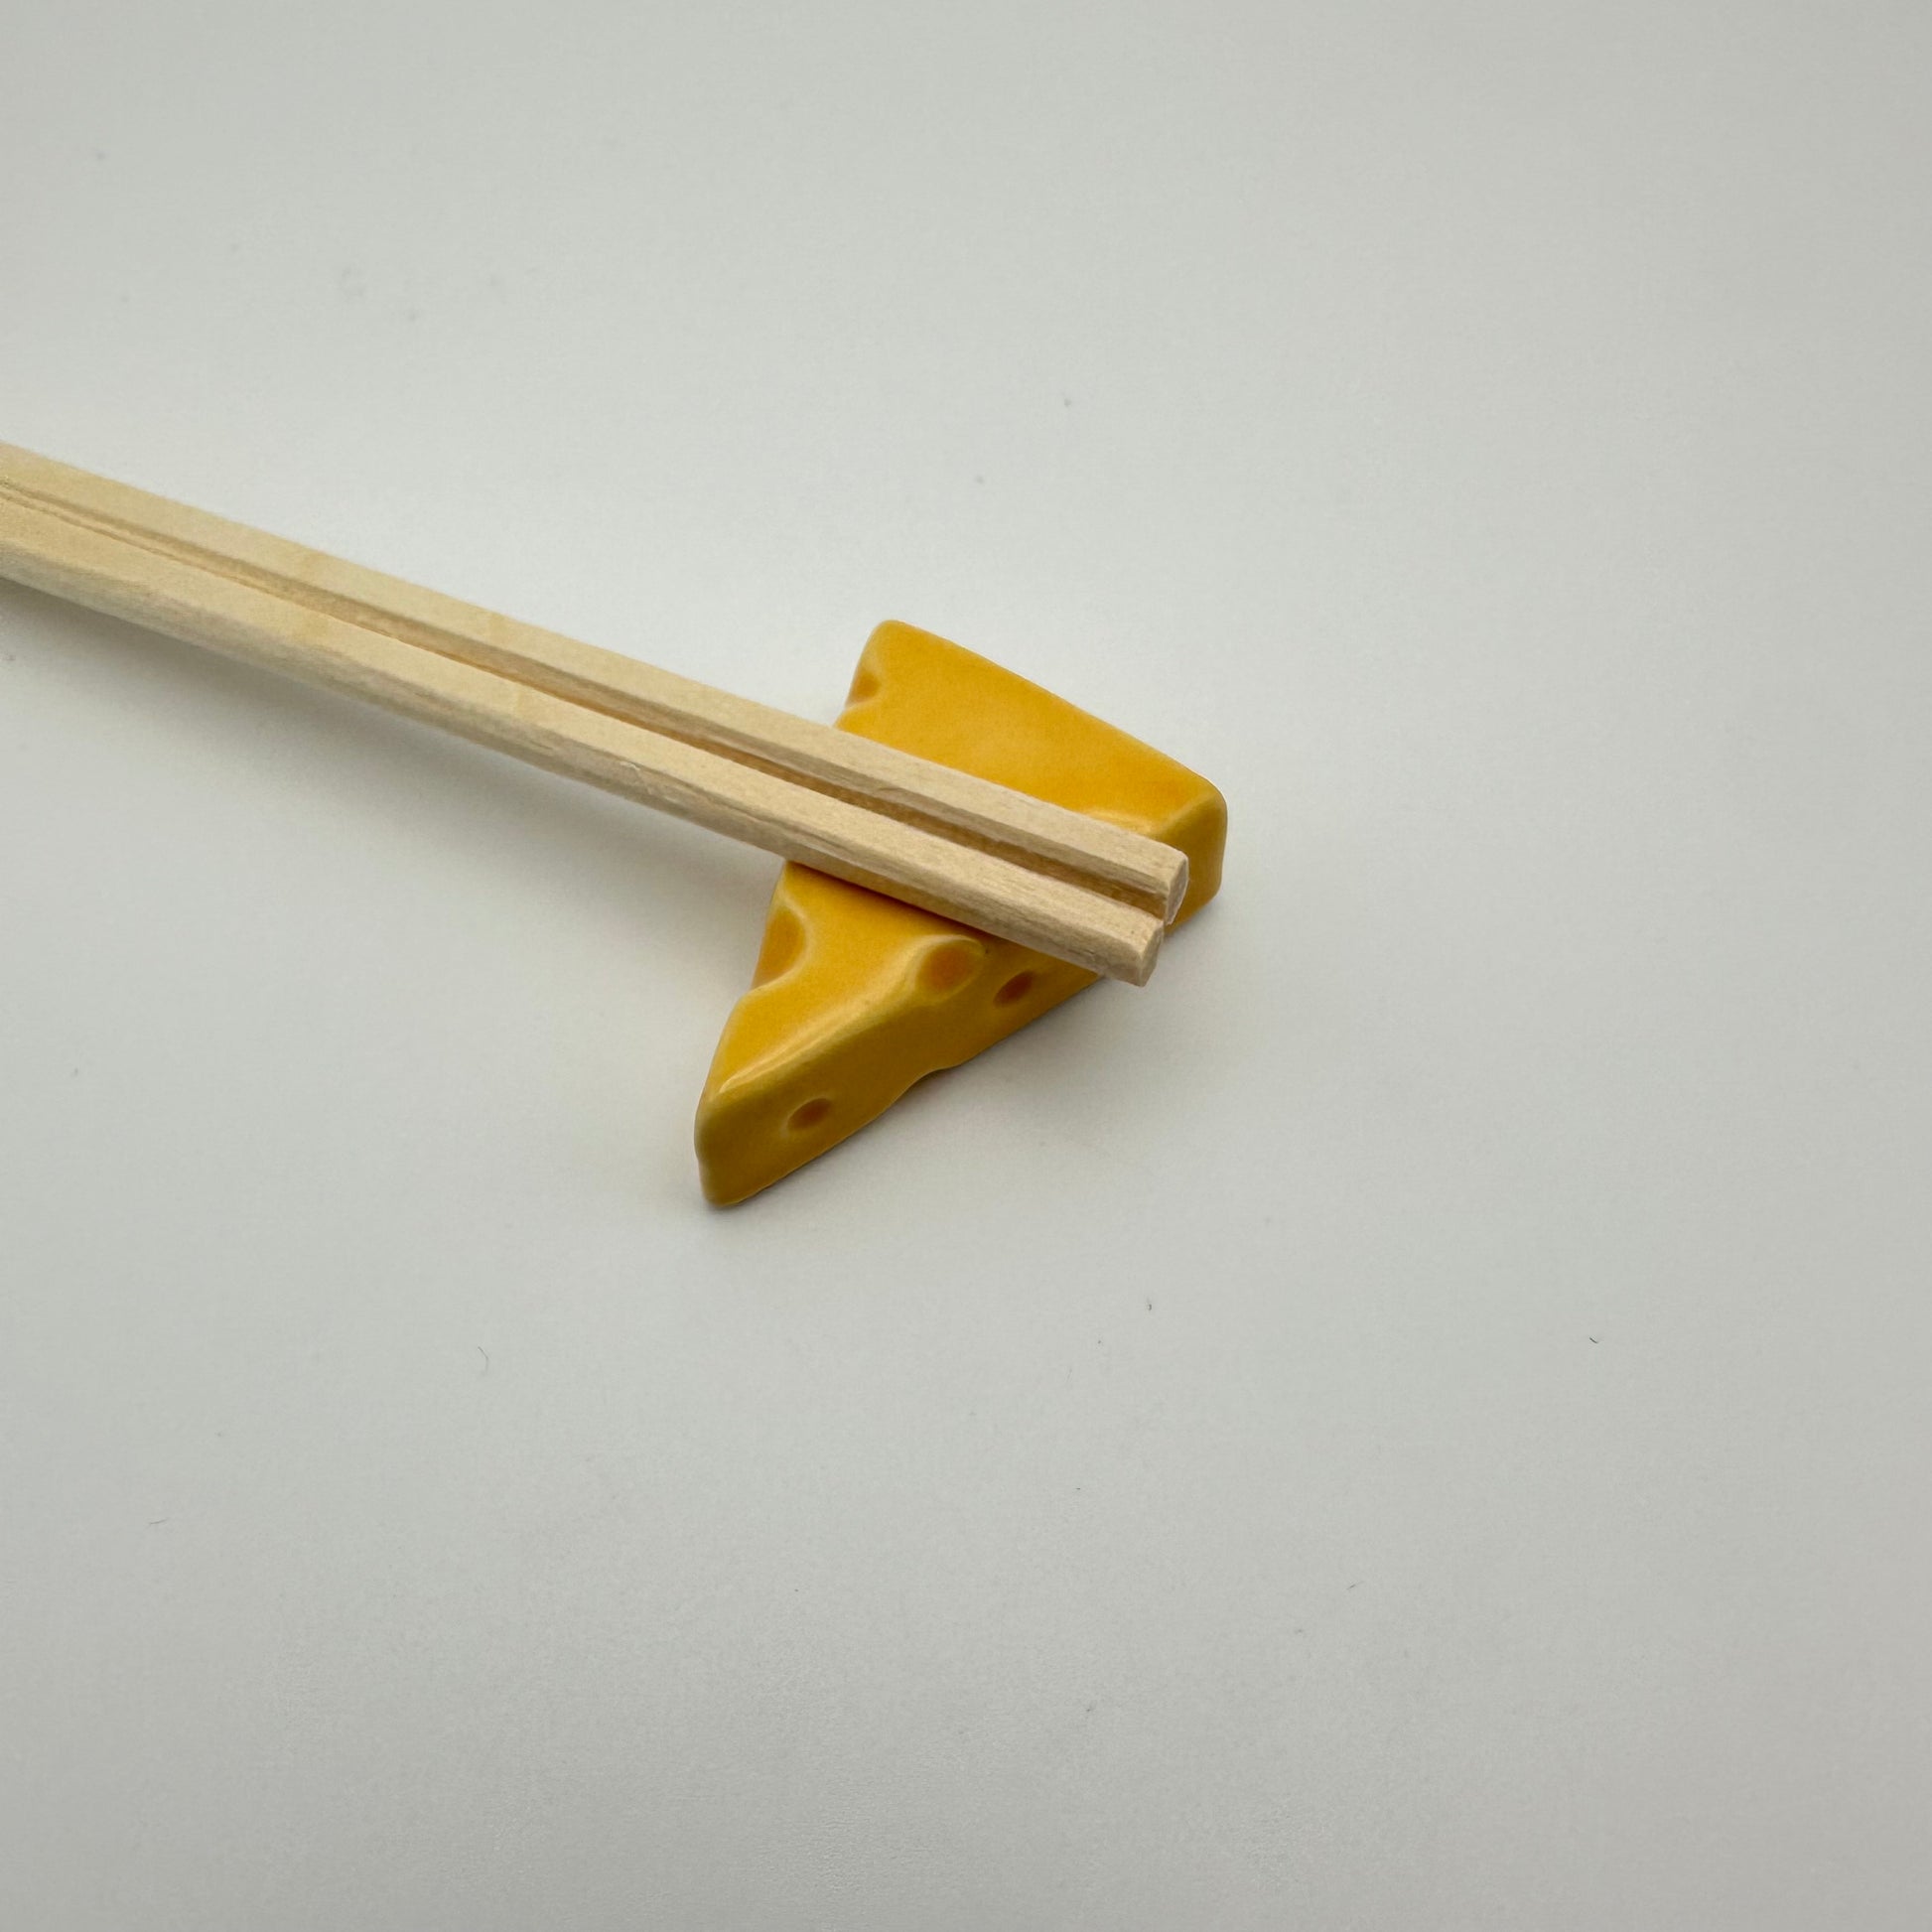 cheese chopstick holder with chopsticks